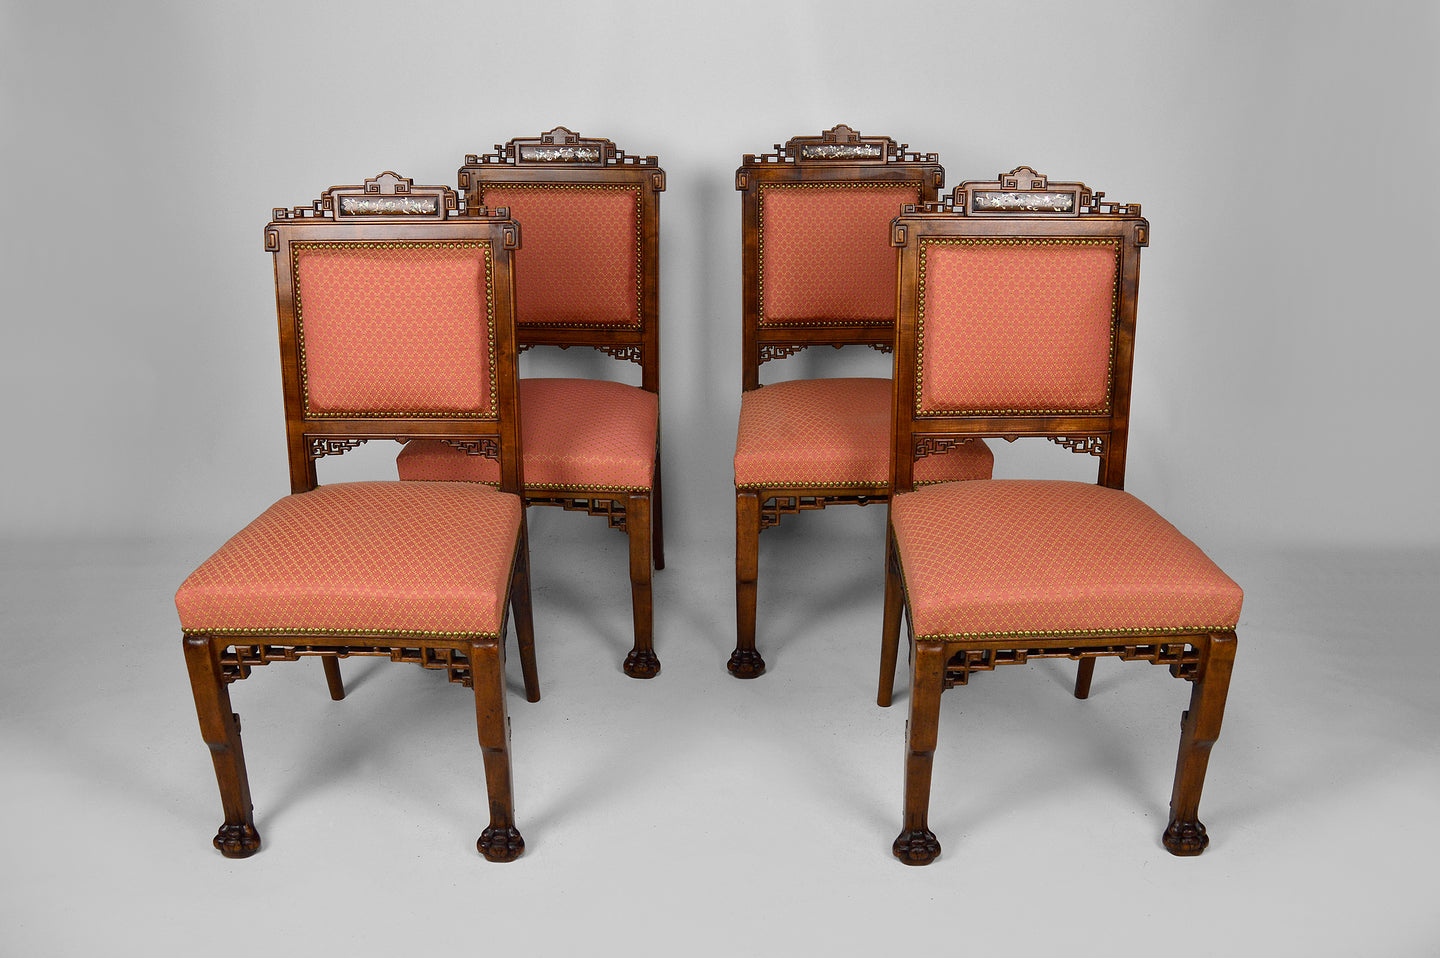 Lot de 4 chaises japonisantes attribuées à Gabriel Viardot, France, circa 1880